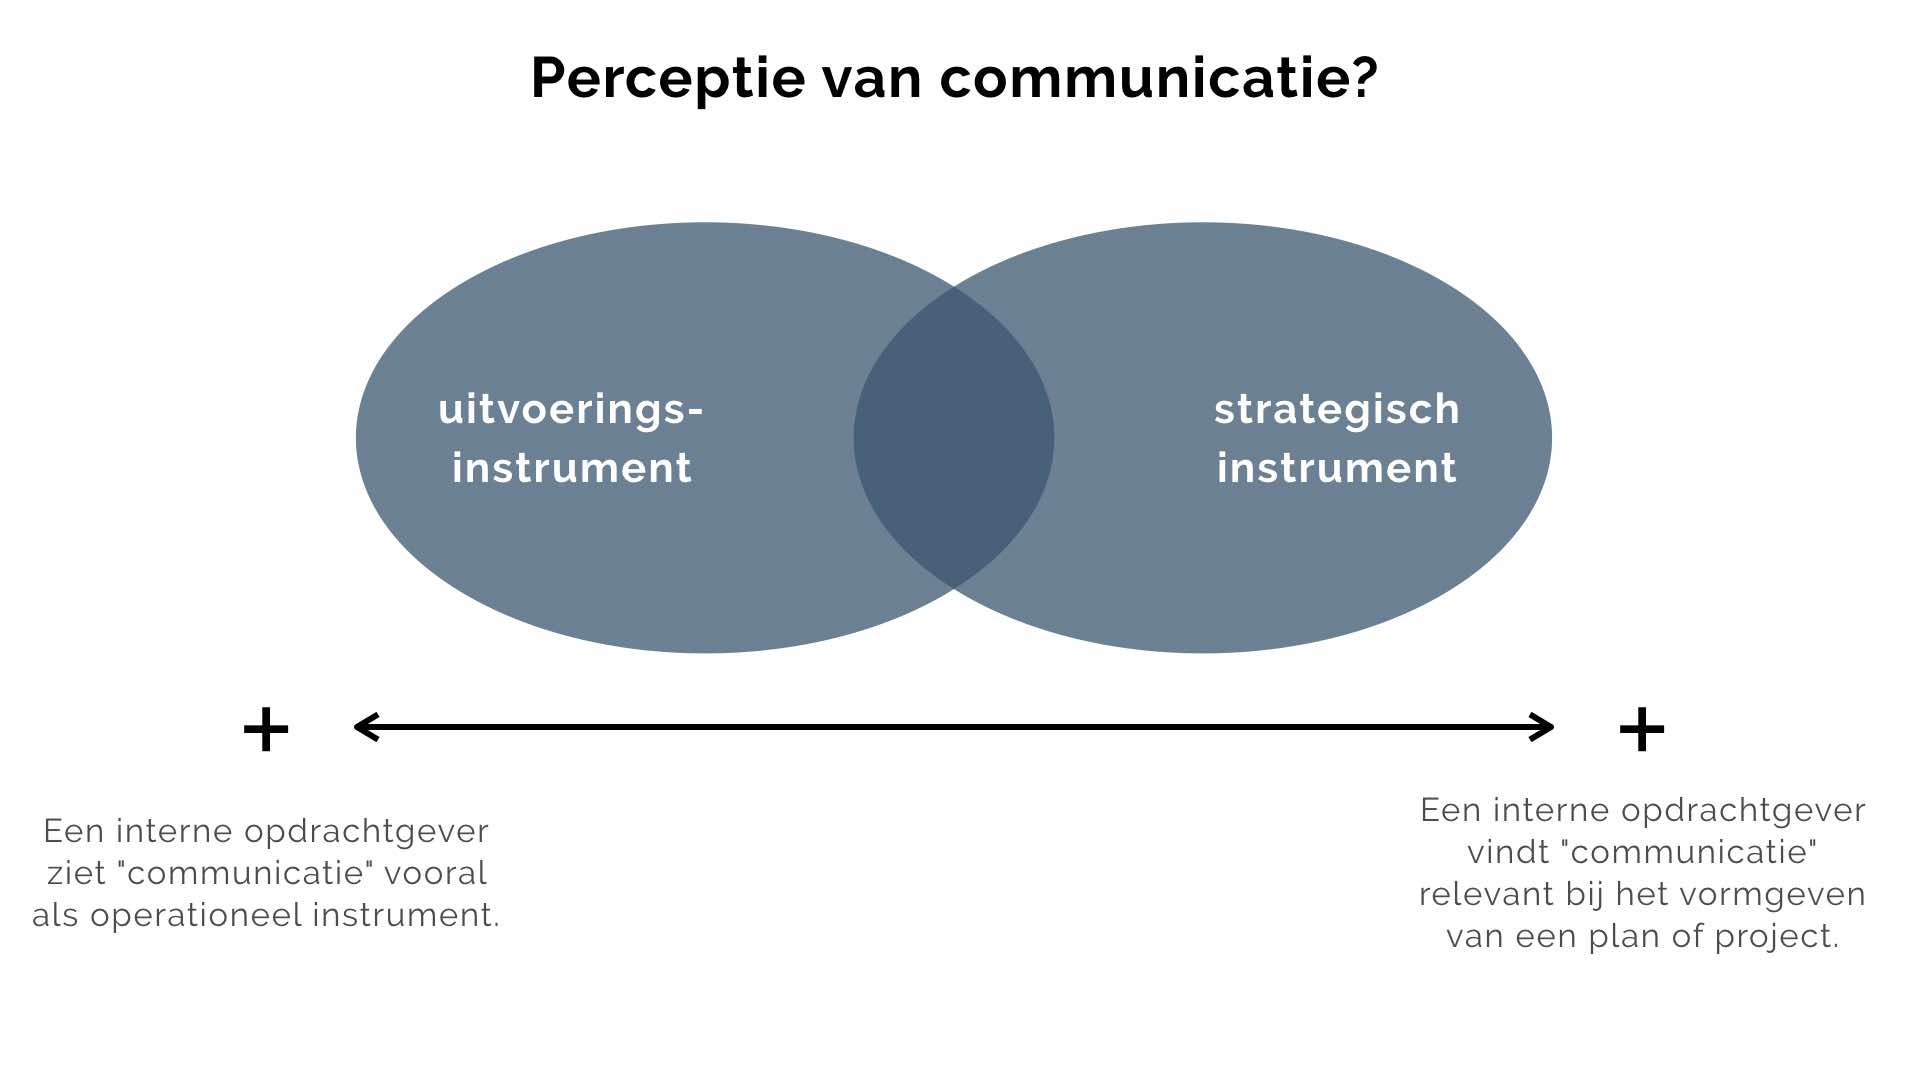 Communicatieperspectief invalshoeken, hoe kijken interne opdrachtgevers naar communicatie